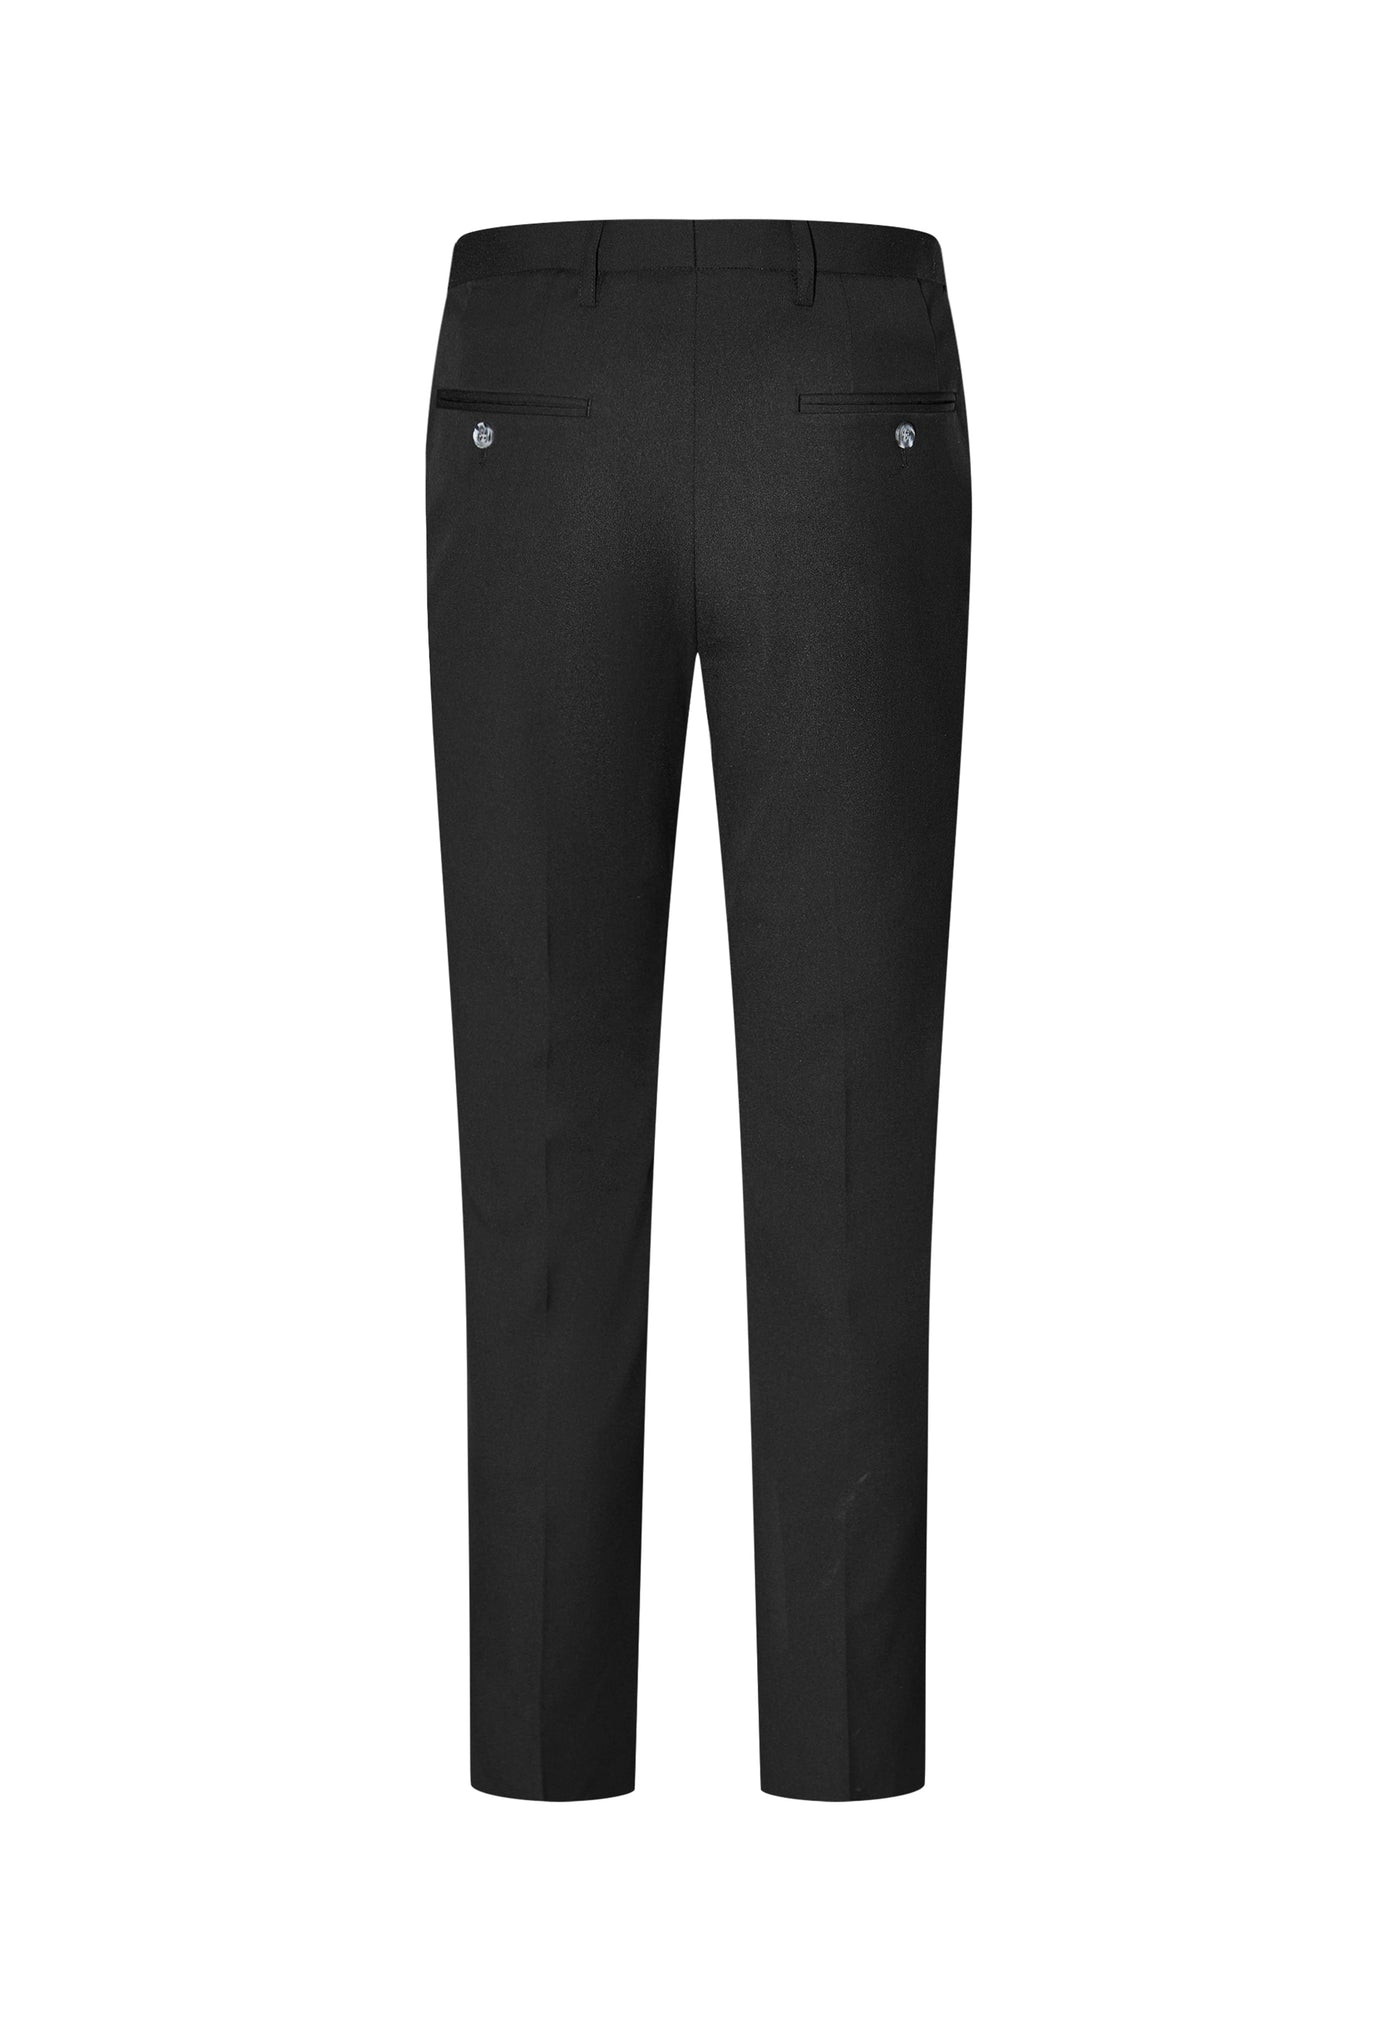 Men Clothing 3M Super Soft Modal Multi-Way Stretch Suit Pants Smart Fit